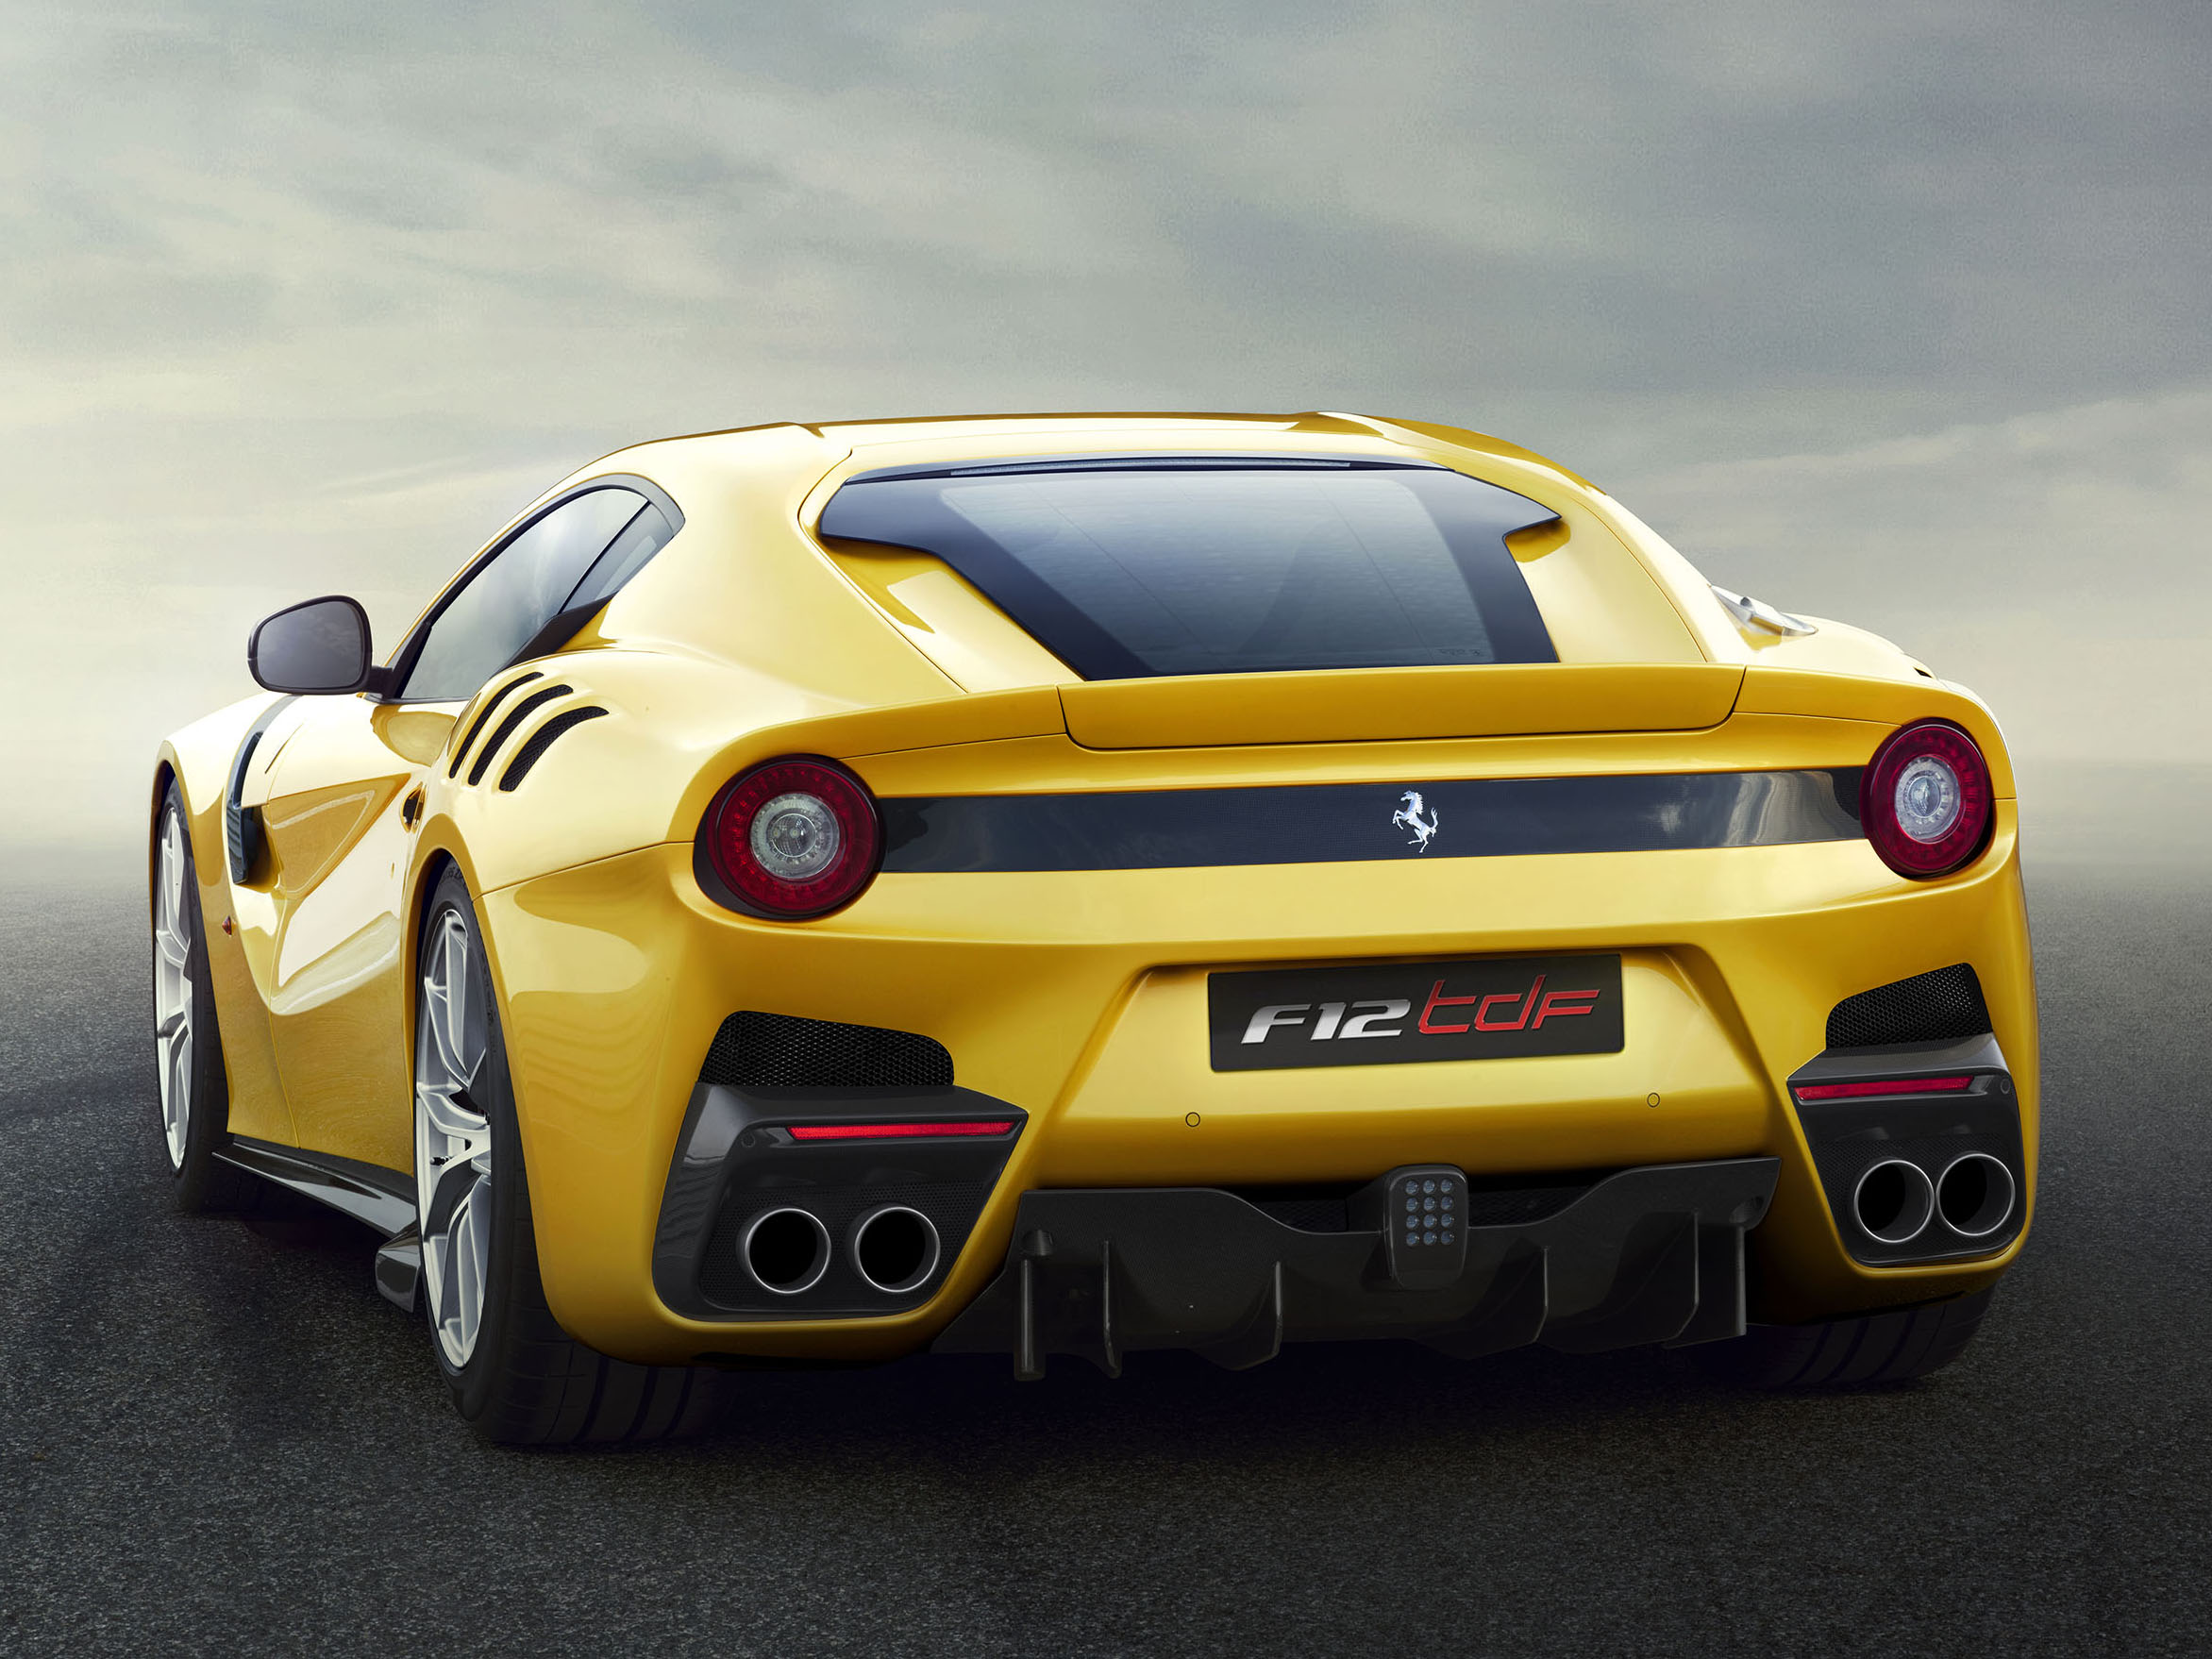 Limited edition Ferrari F12tdf unveiled